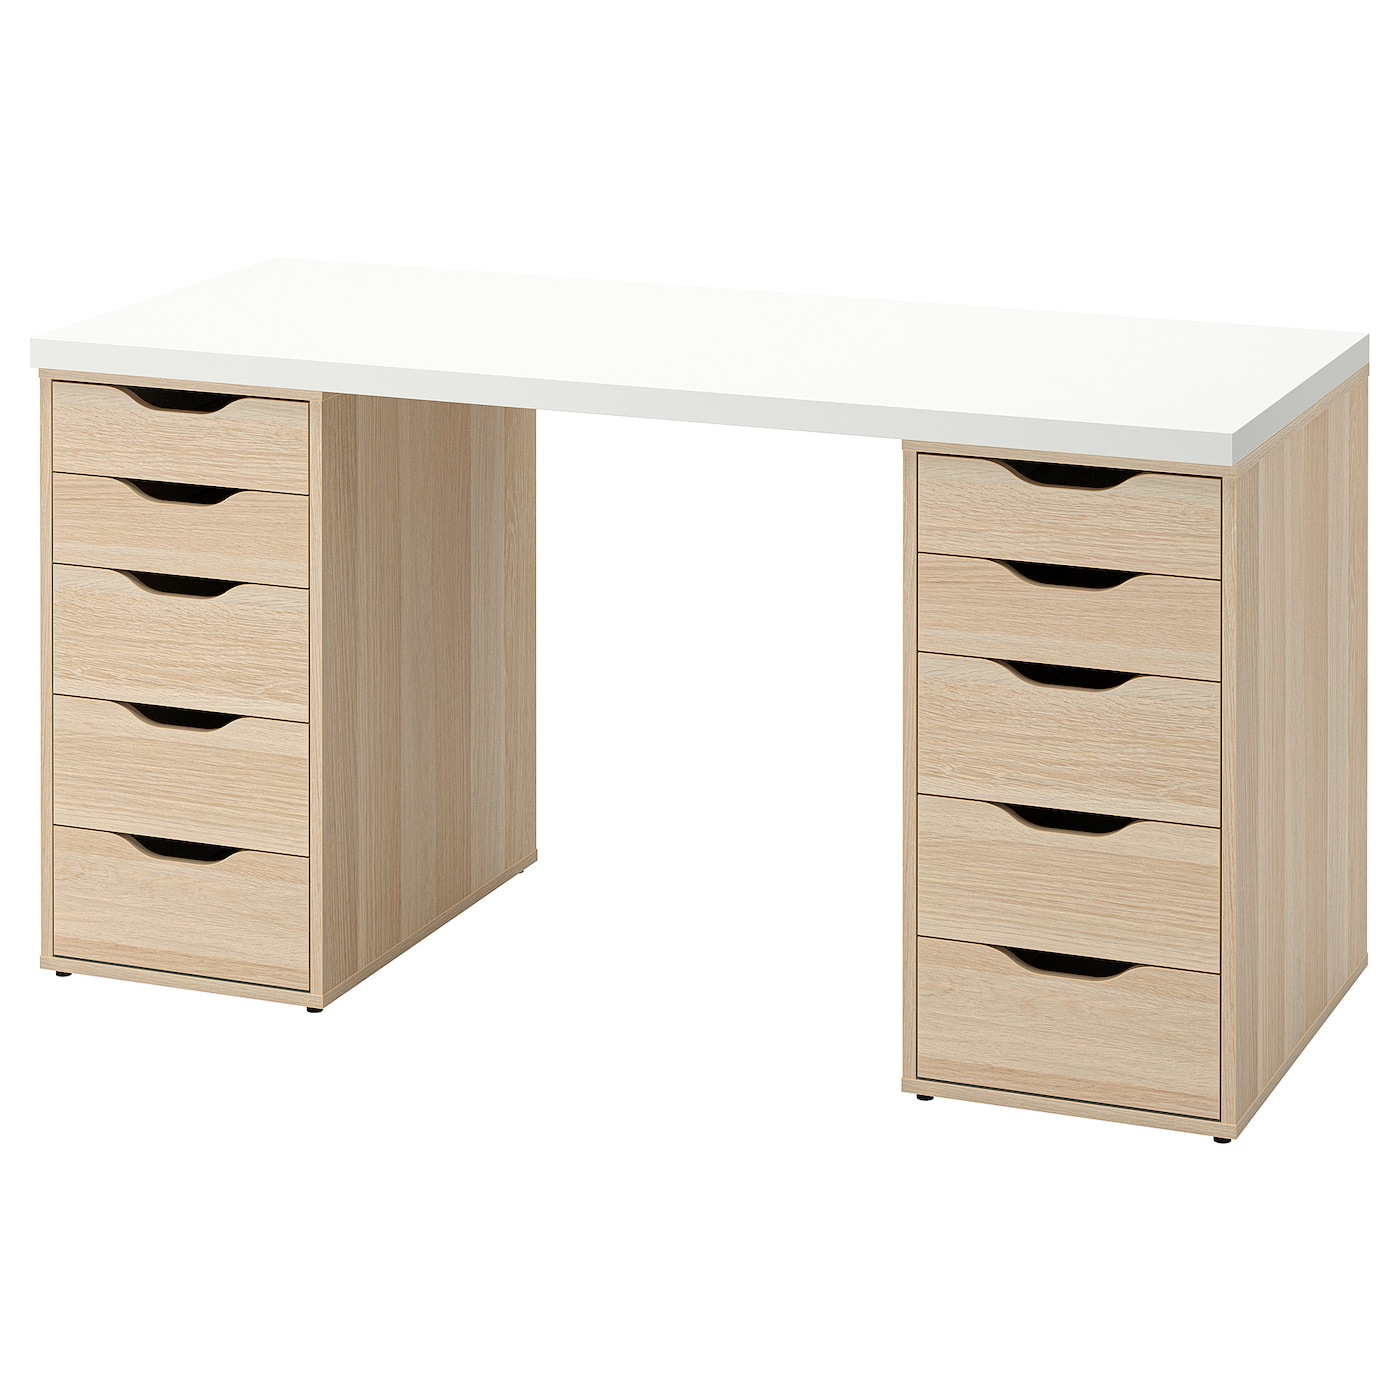 Письменный стол с ящиками - IKEA LAGKAPTEN/ALEX, 140х60 см, под беленый дуб/белый, ЛАГКАПТЕН/АЛЕКС ИКЕА